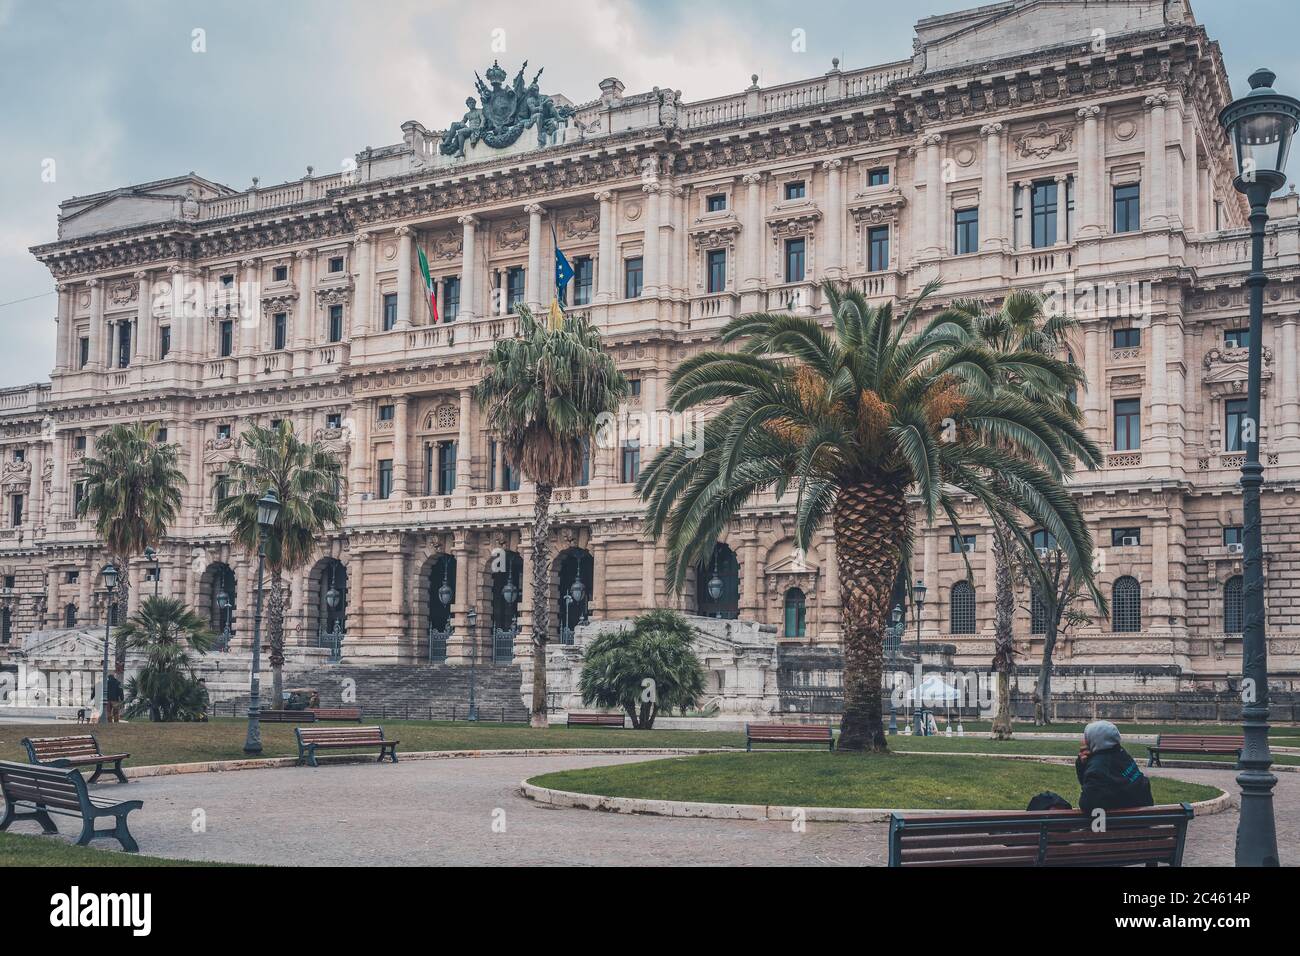 Supreme court of cassation – Corte suprema di Cassazione Stock Photo